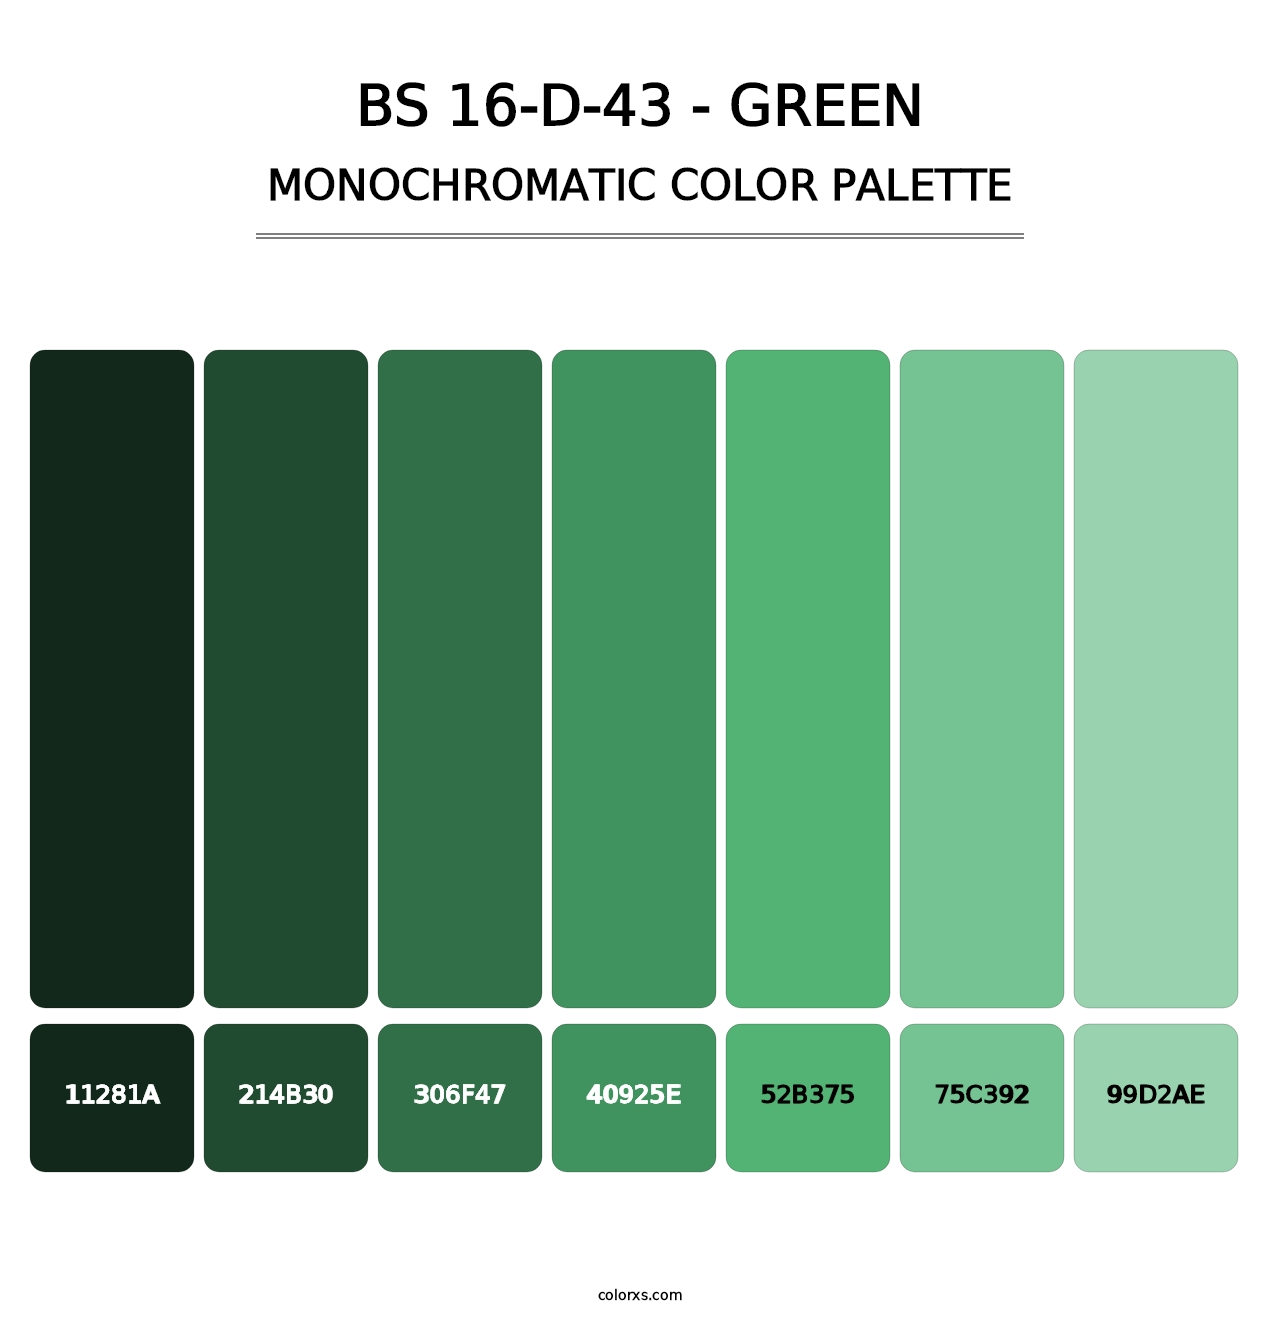 BS 16-D-43 - Green - Monochromatic Color Palette